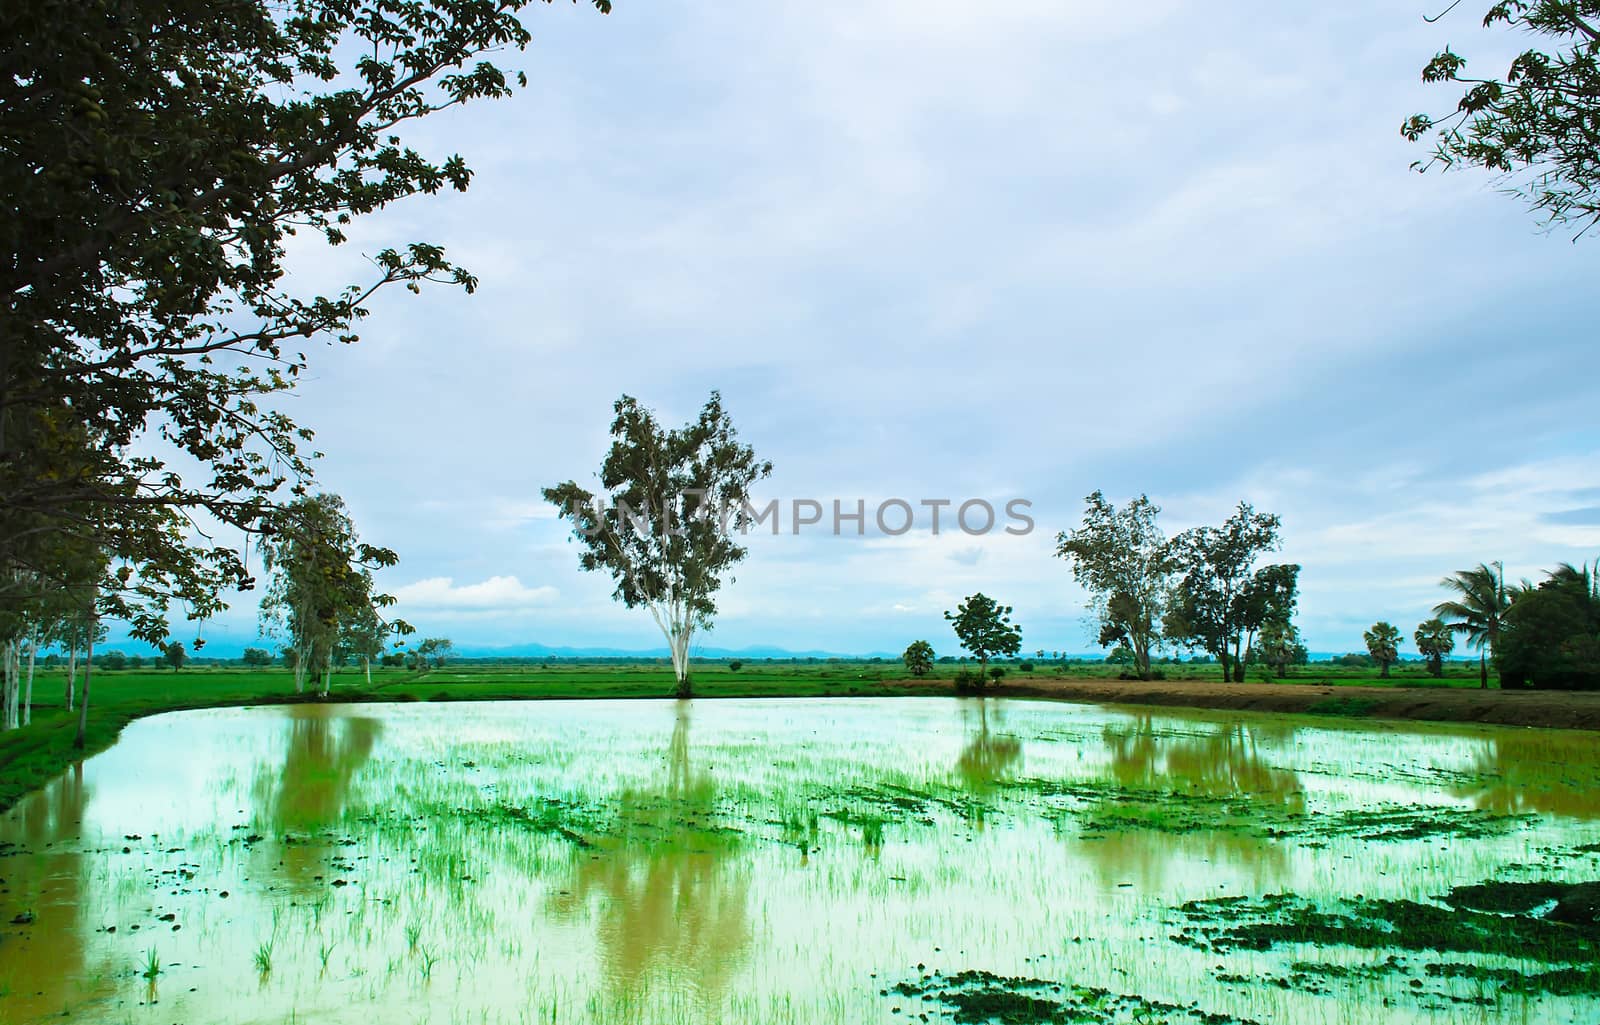 Landscape of Rice Field by kobfujar